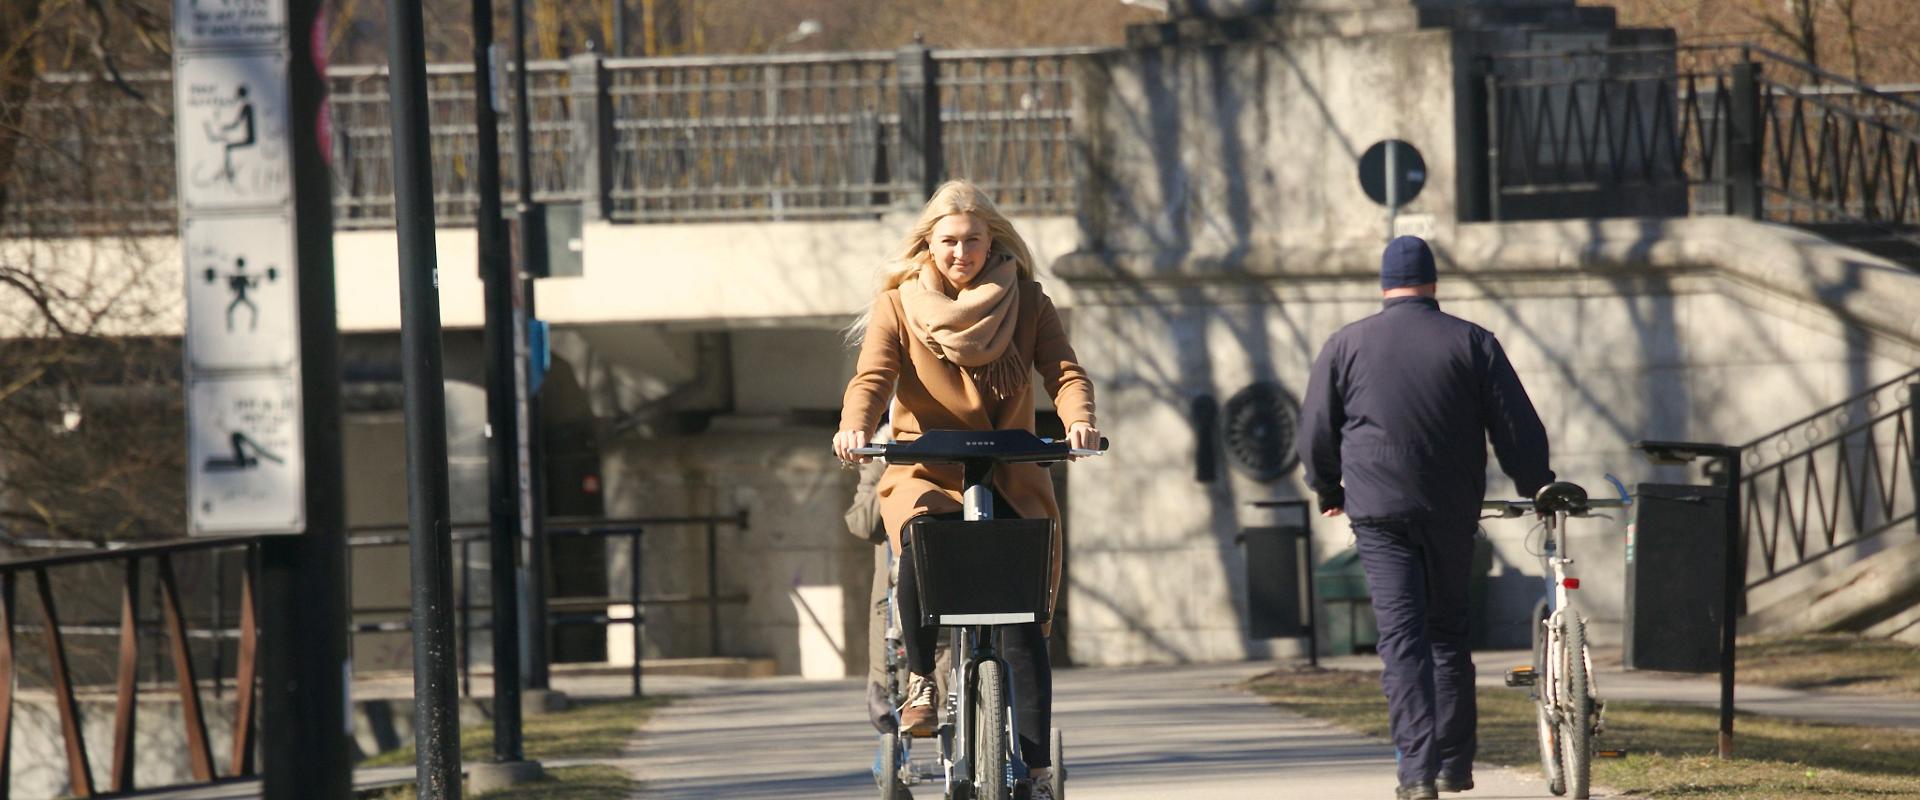 Tarton kaupungin polkupyörät